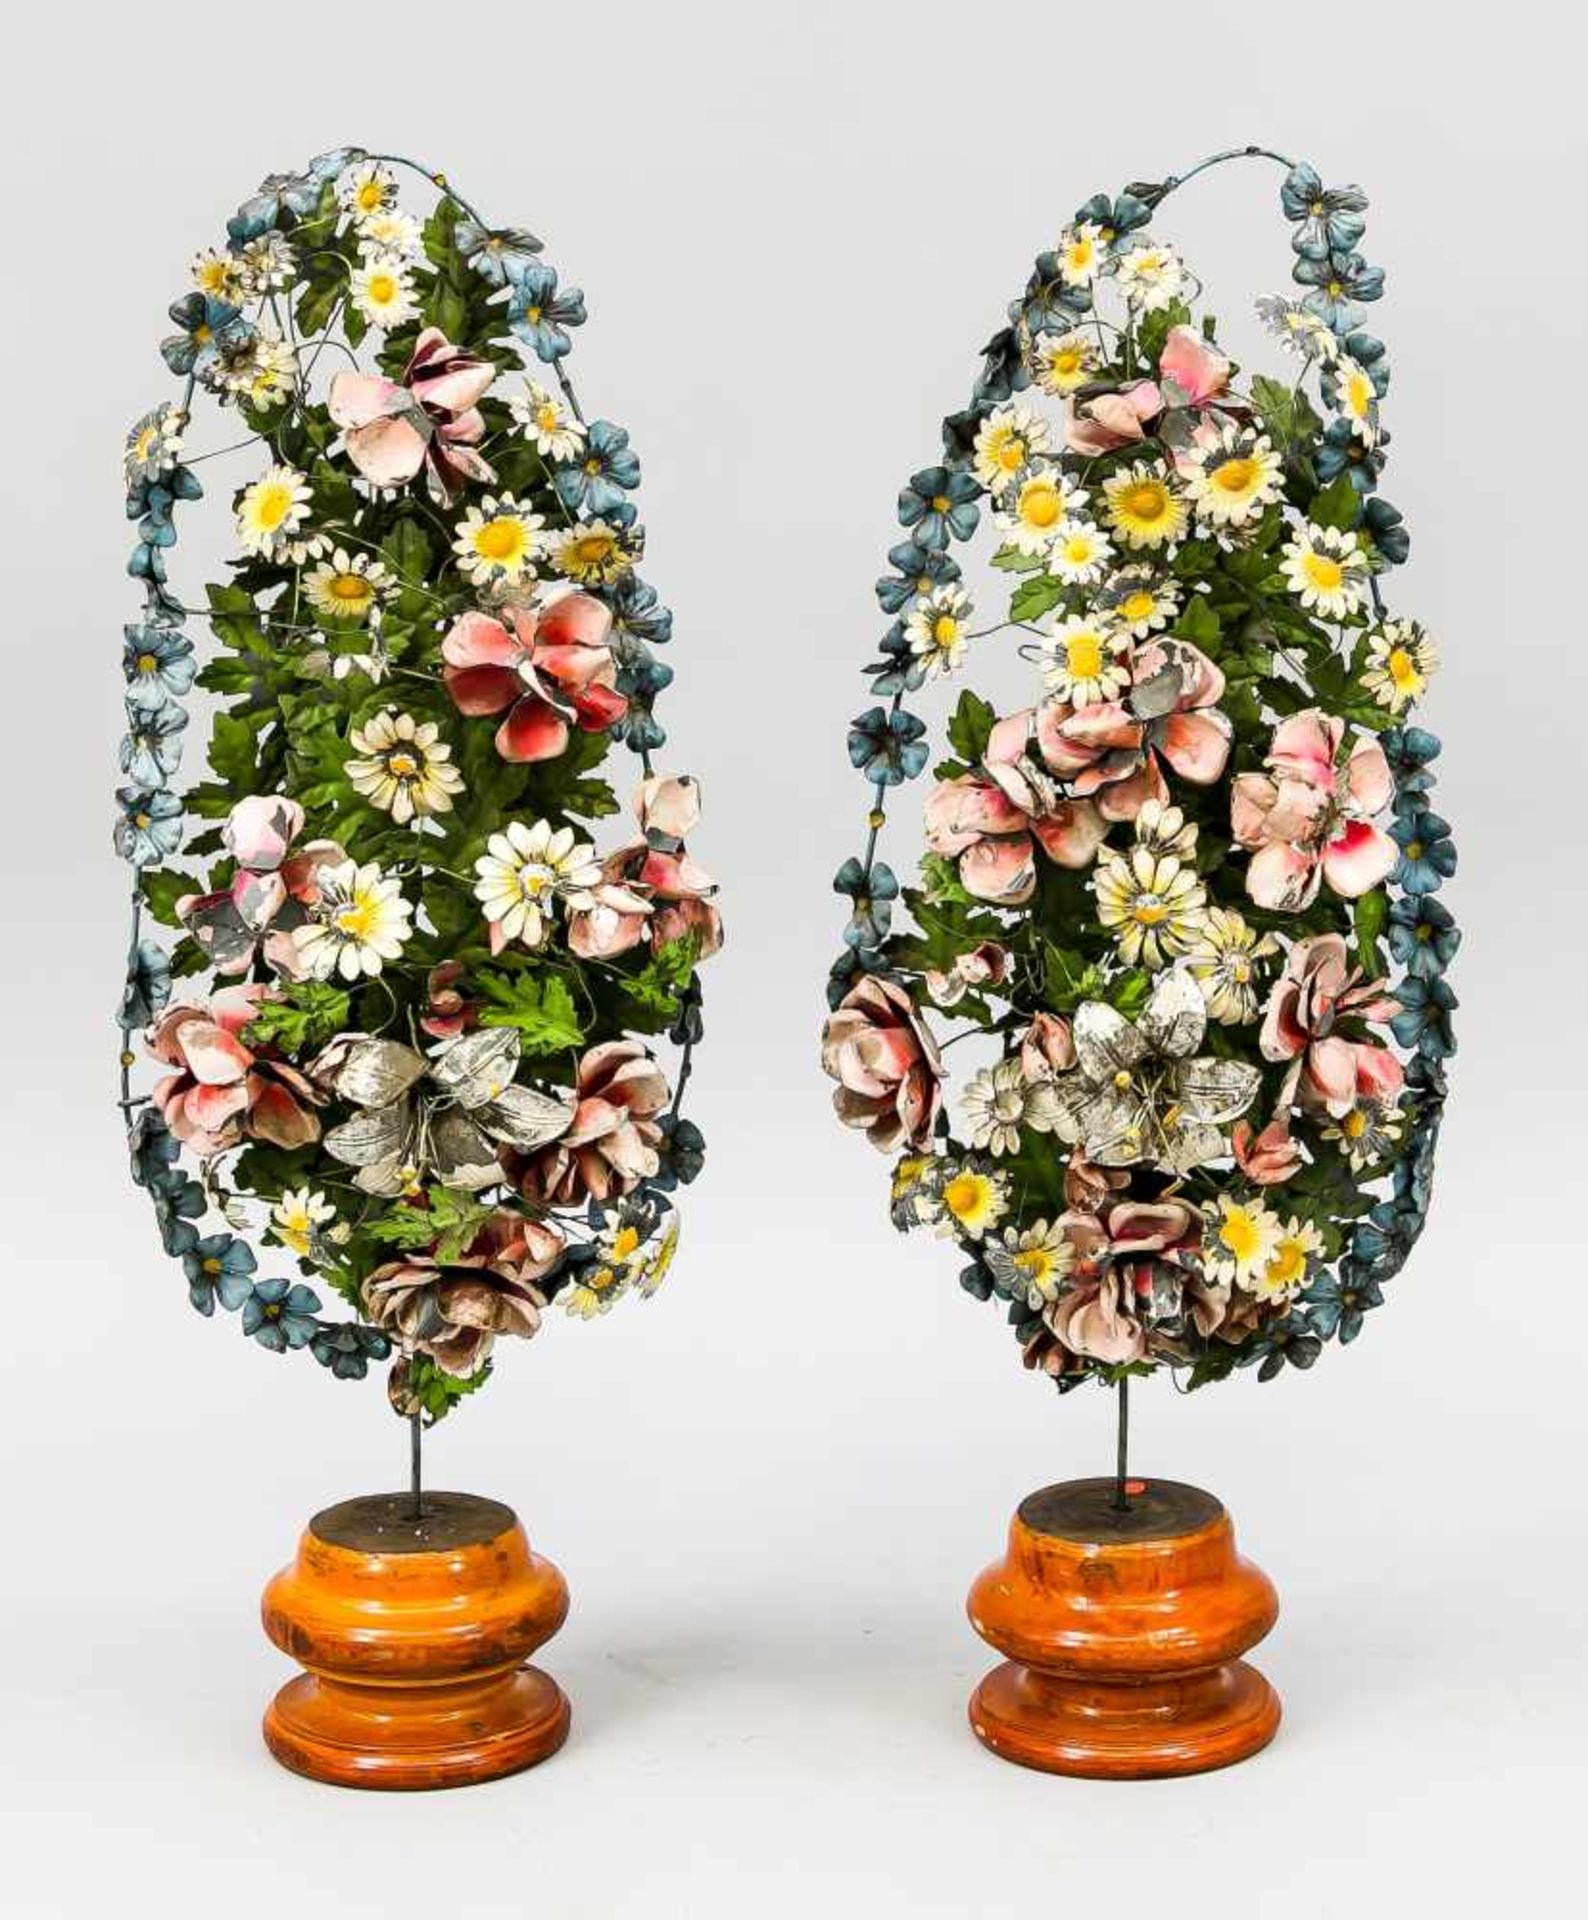 Paar Altaraufsätze für die Ostermesse?, Ende 19. Jh. Blumenarrangement mit Eichenlaub